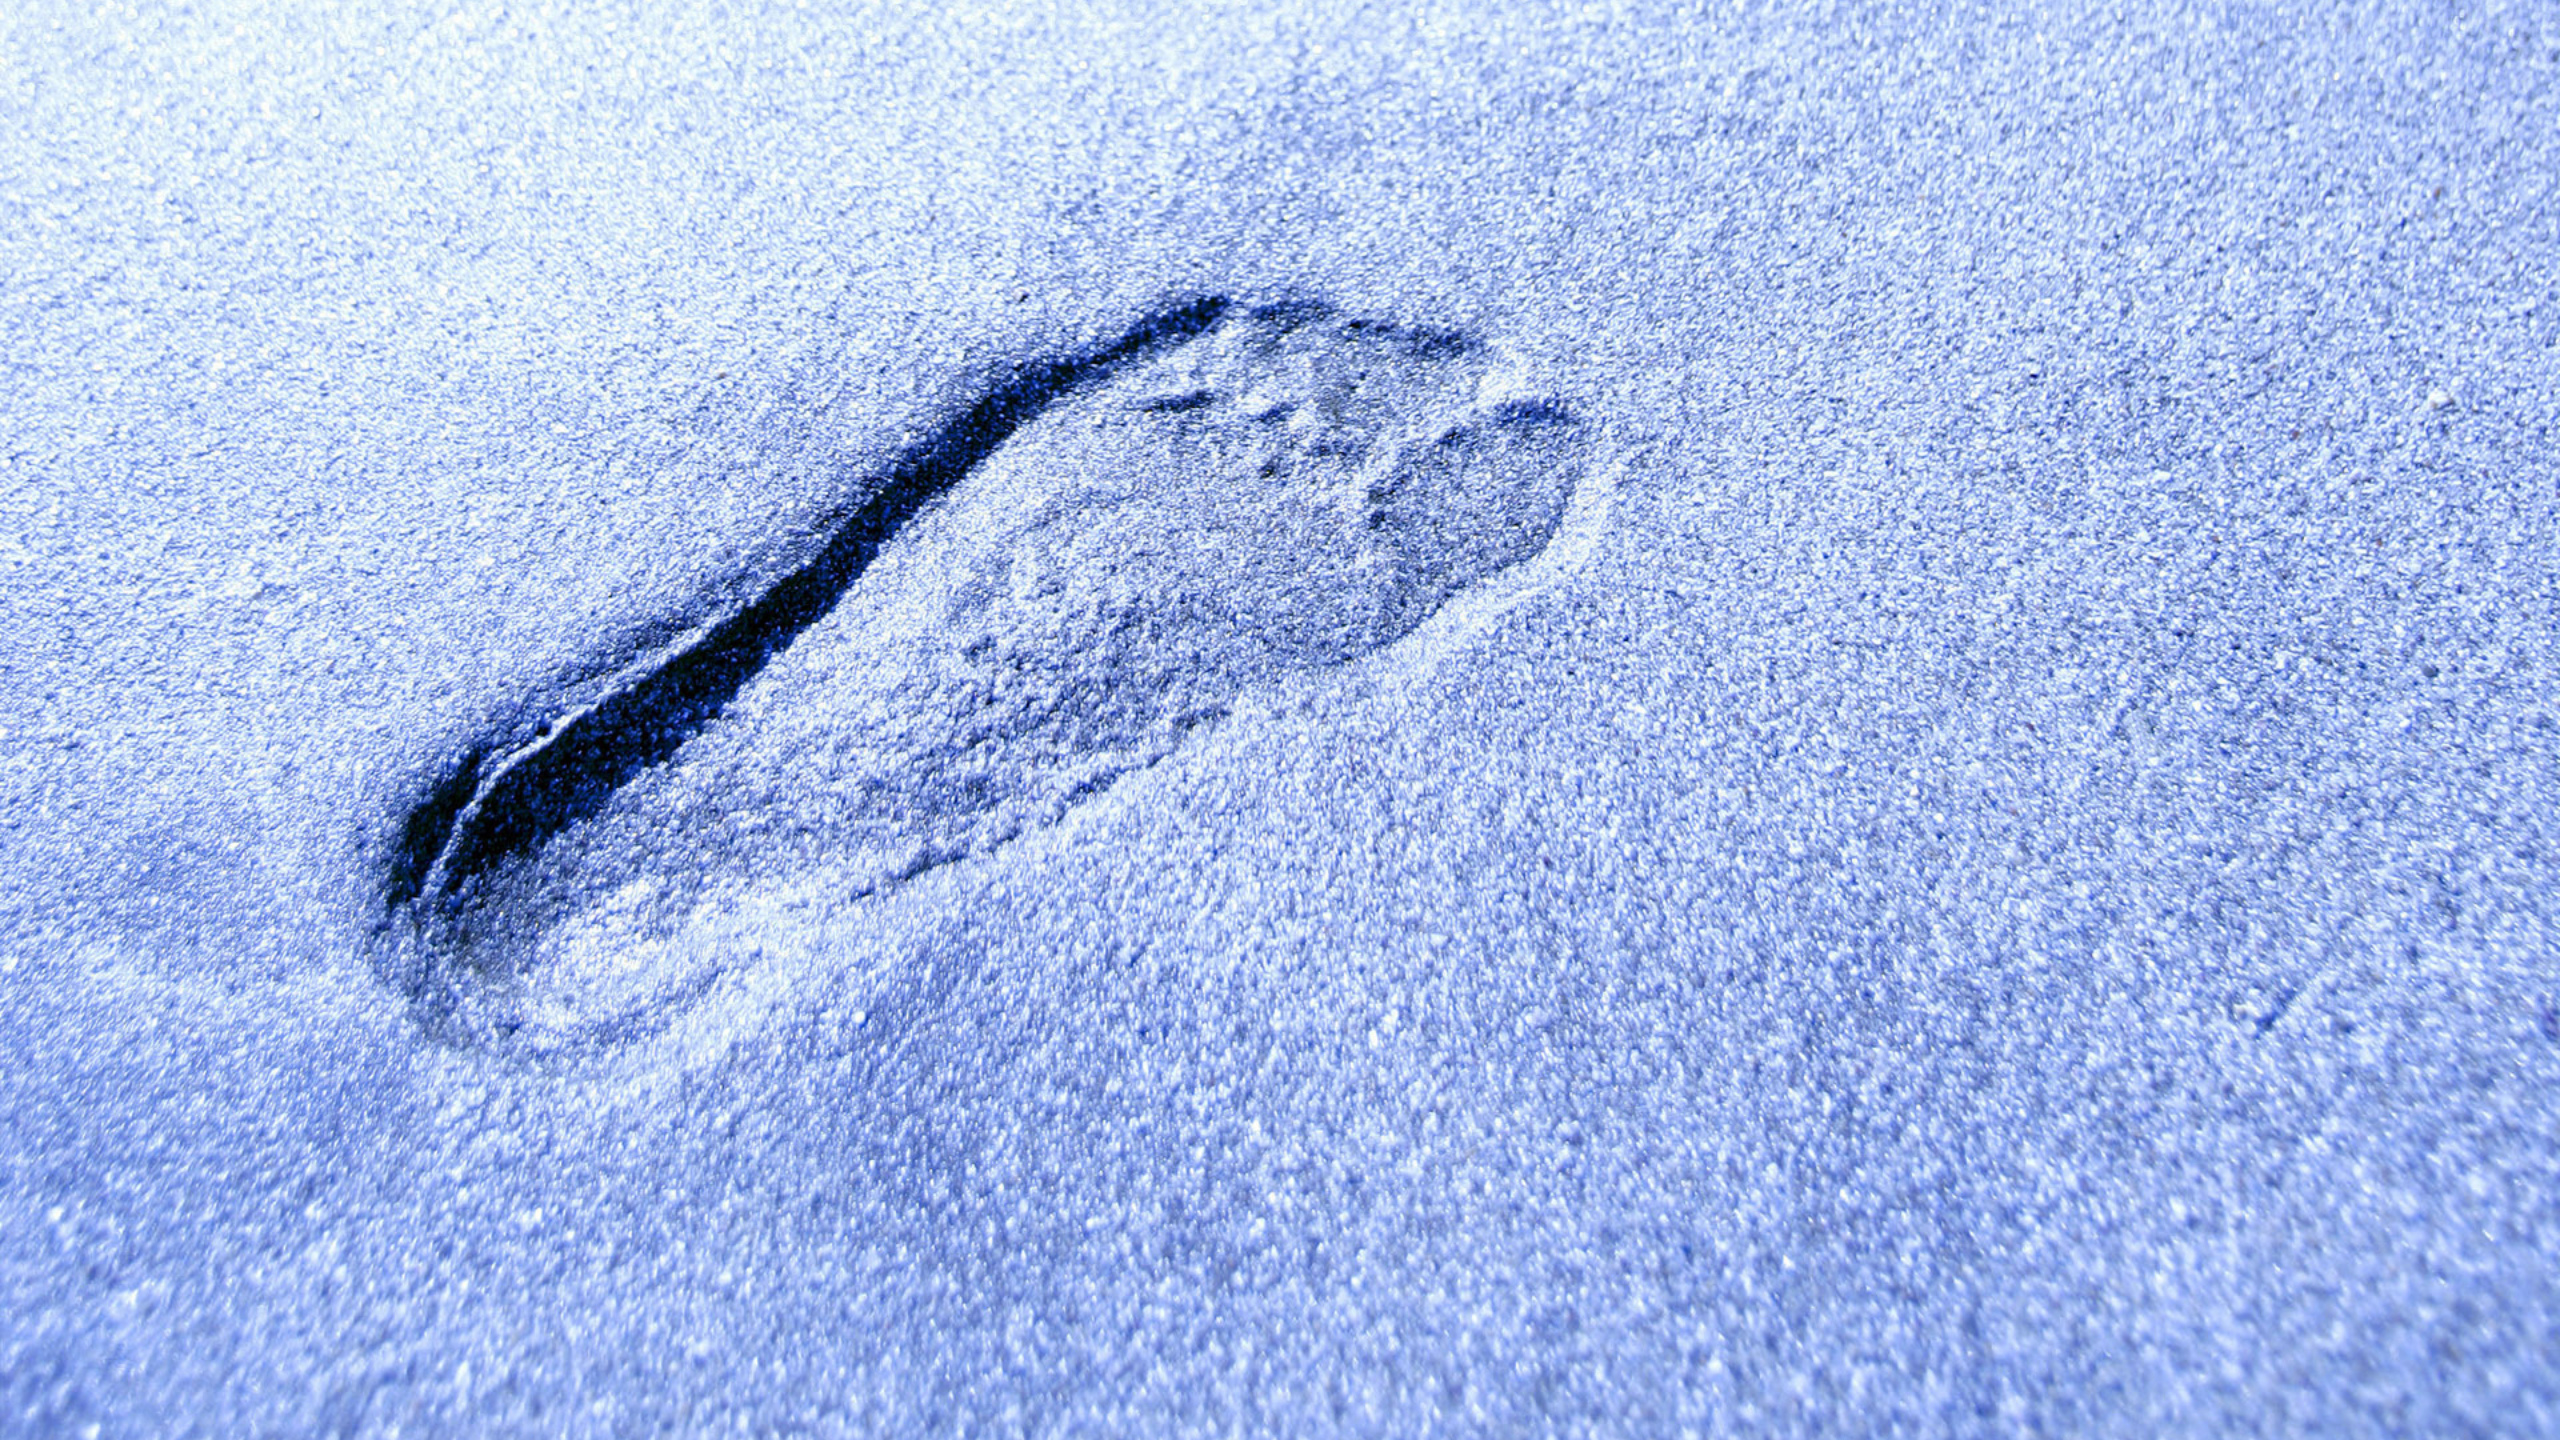 След бесследно. Следы на снегу. Следы. Отпечатки ног на снегу. Человеческие следы.